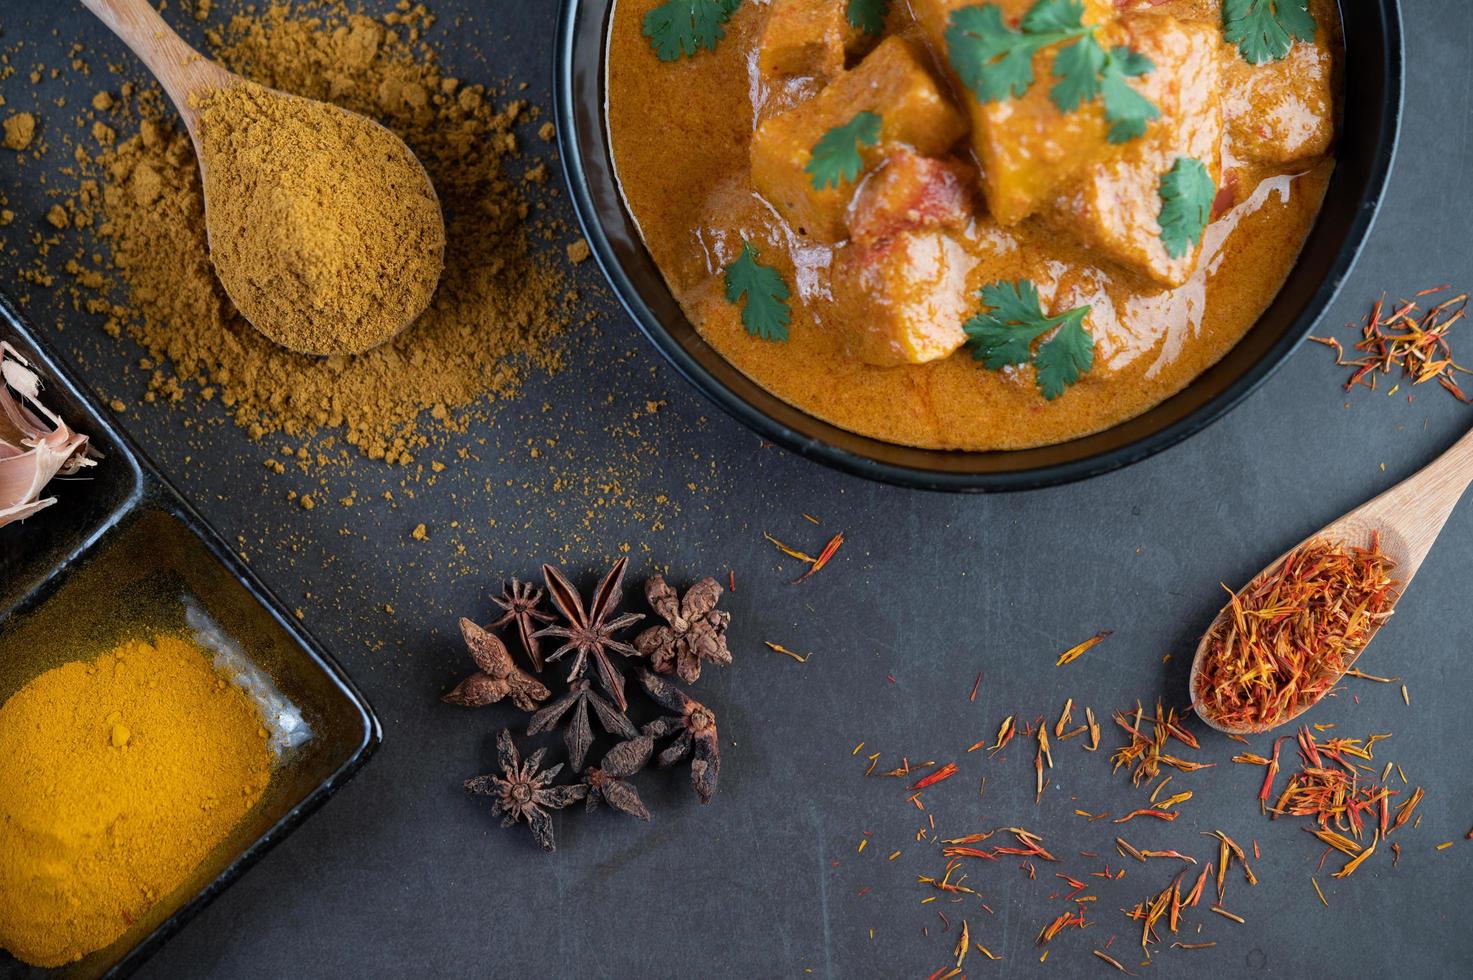 curry massaman con spezie tradizionali foto